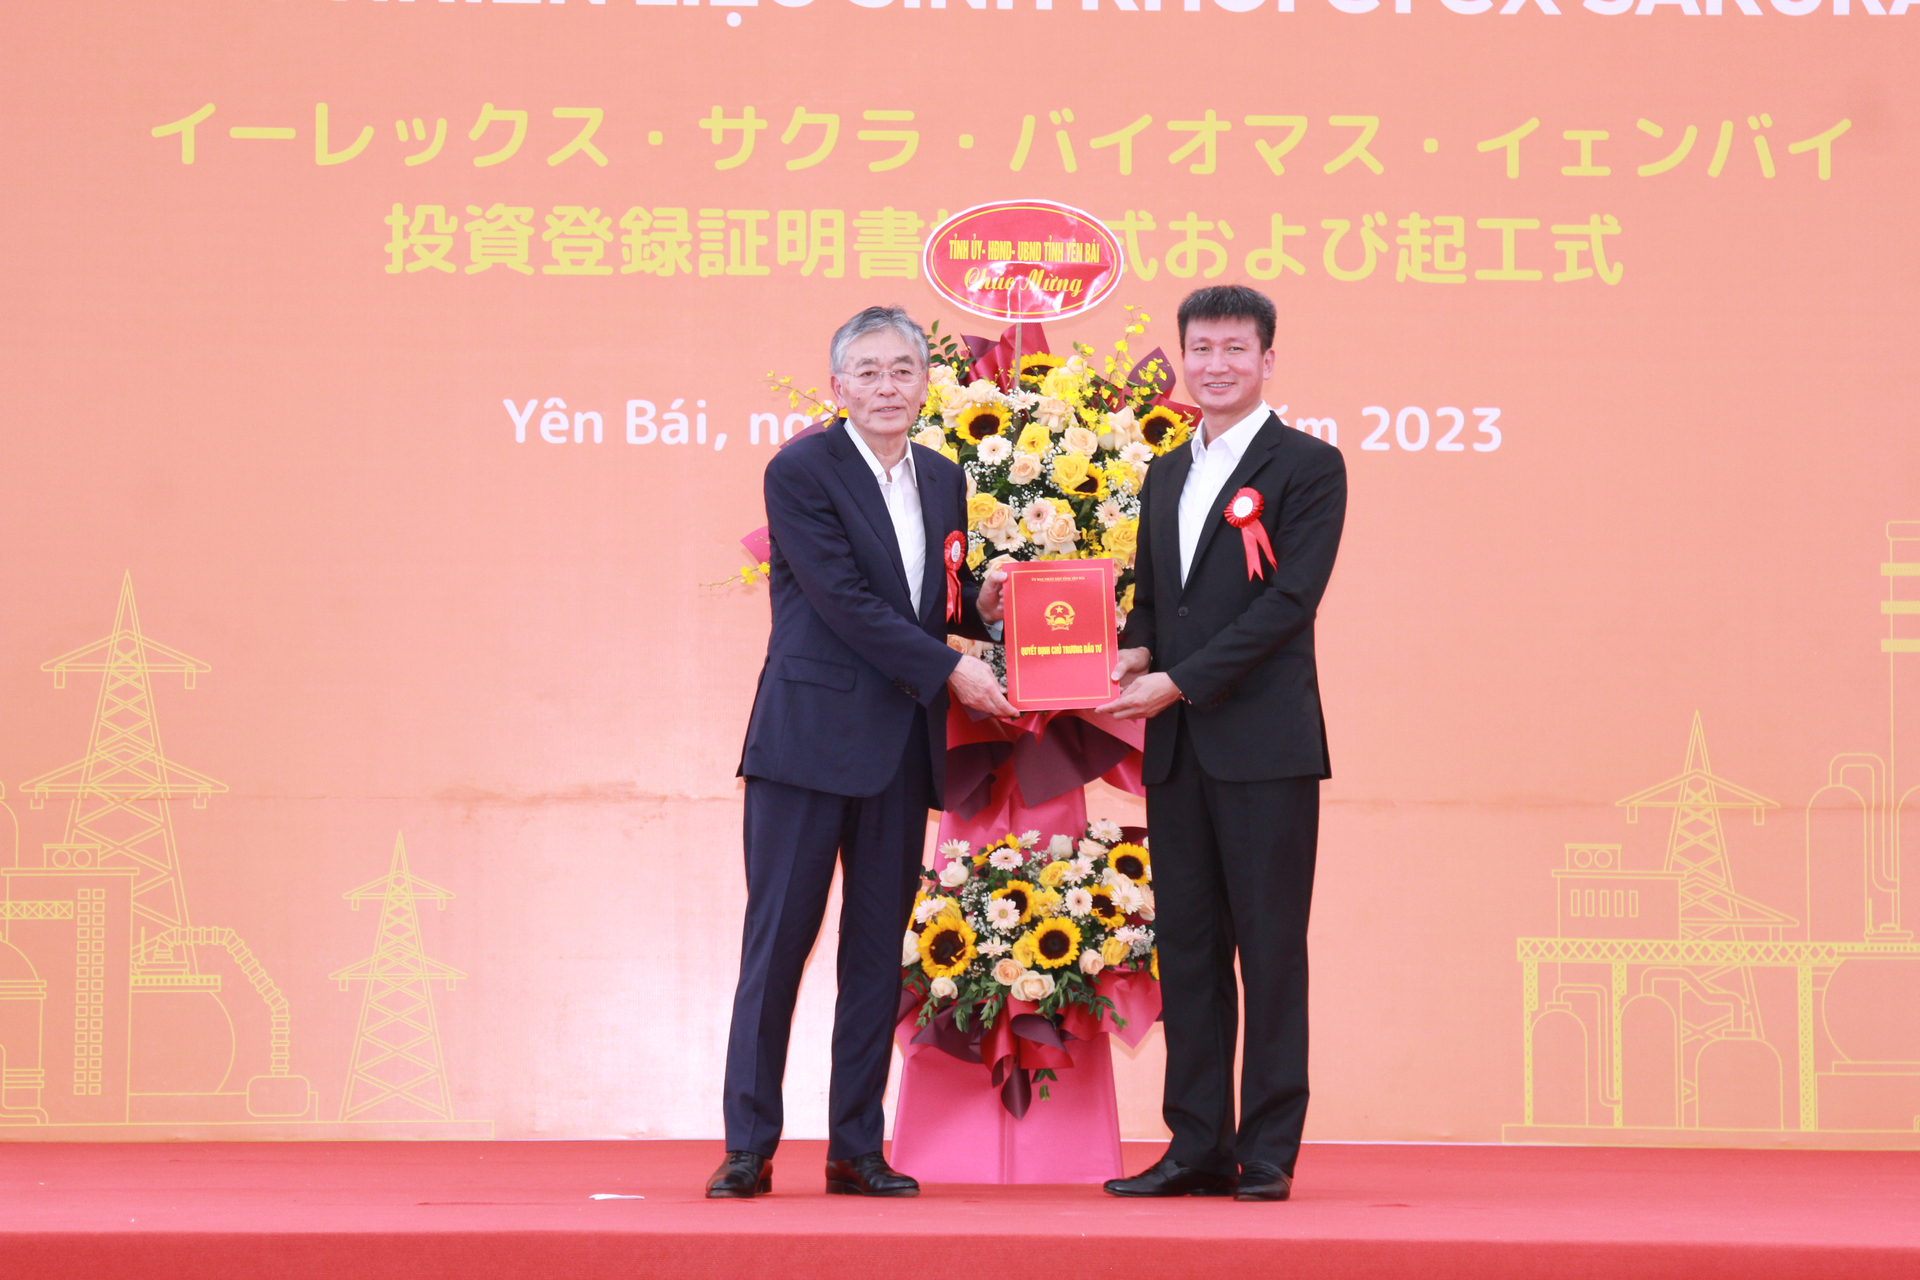 Ông Trần Huy Tuấn - Chủ tịch UBND tỉnh Yên Bái trao Quyết định chấp thuận chủ trương đầu tư Dự án và tặng hoa chúc mừng Công ty Cổ phần EREX - Nhật Bản. Ảnh: Thanh Tiến.